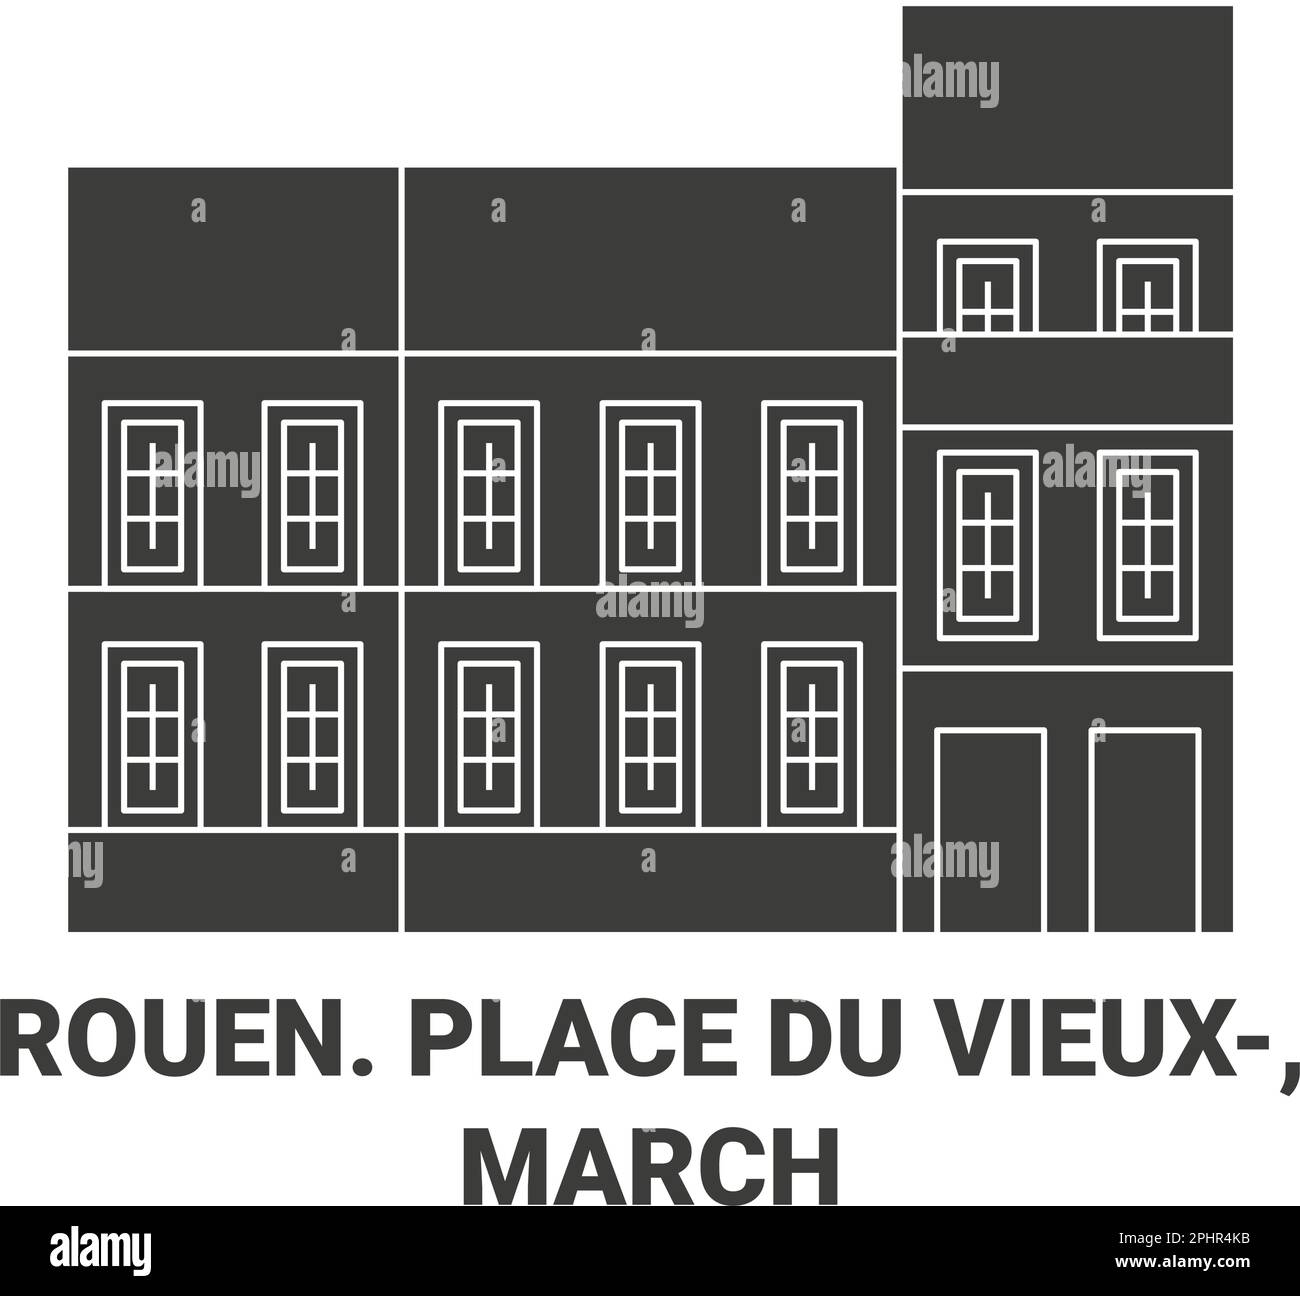 France, Rouen. Place Du Vieux, March travel landmark vector illustration Stock Vector